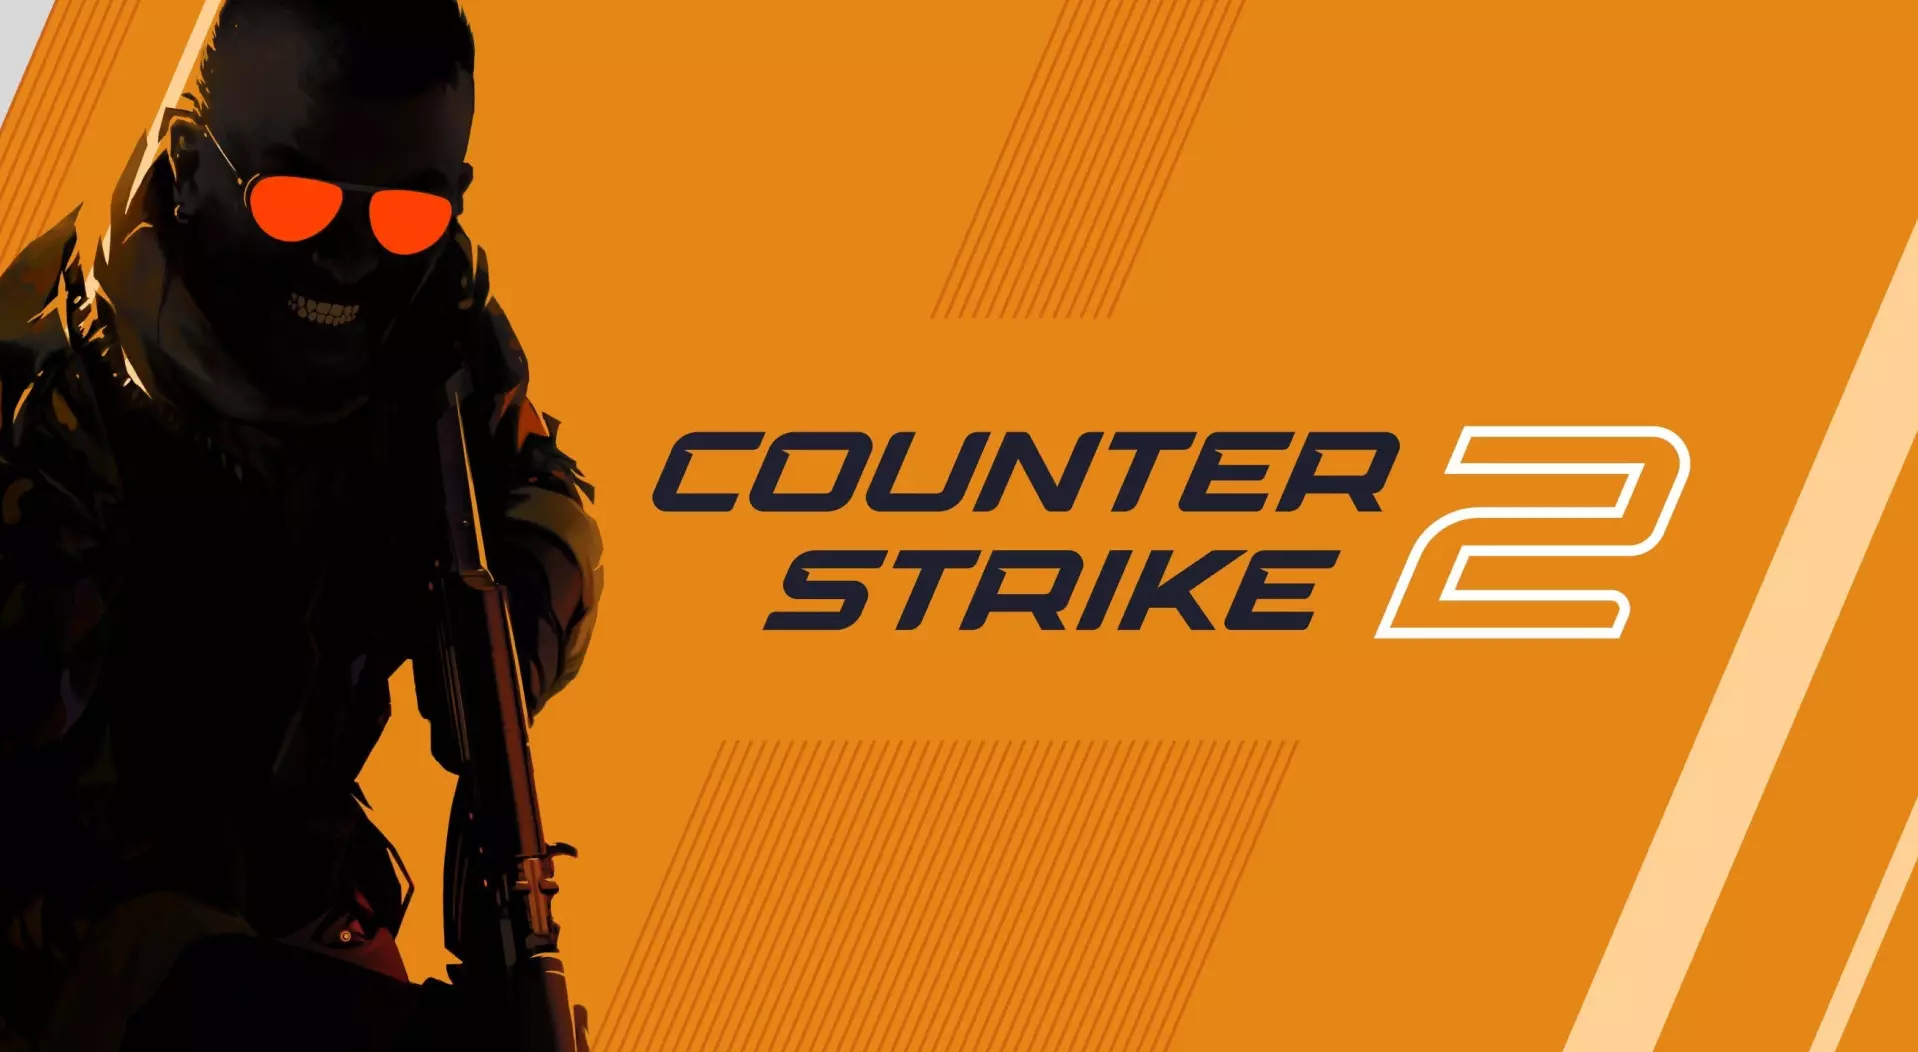 Valve wydaje dużą aktualizację dla Counter-Strike 2, dodając celowanie dla leworęcznych i nie tylko